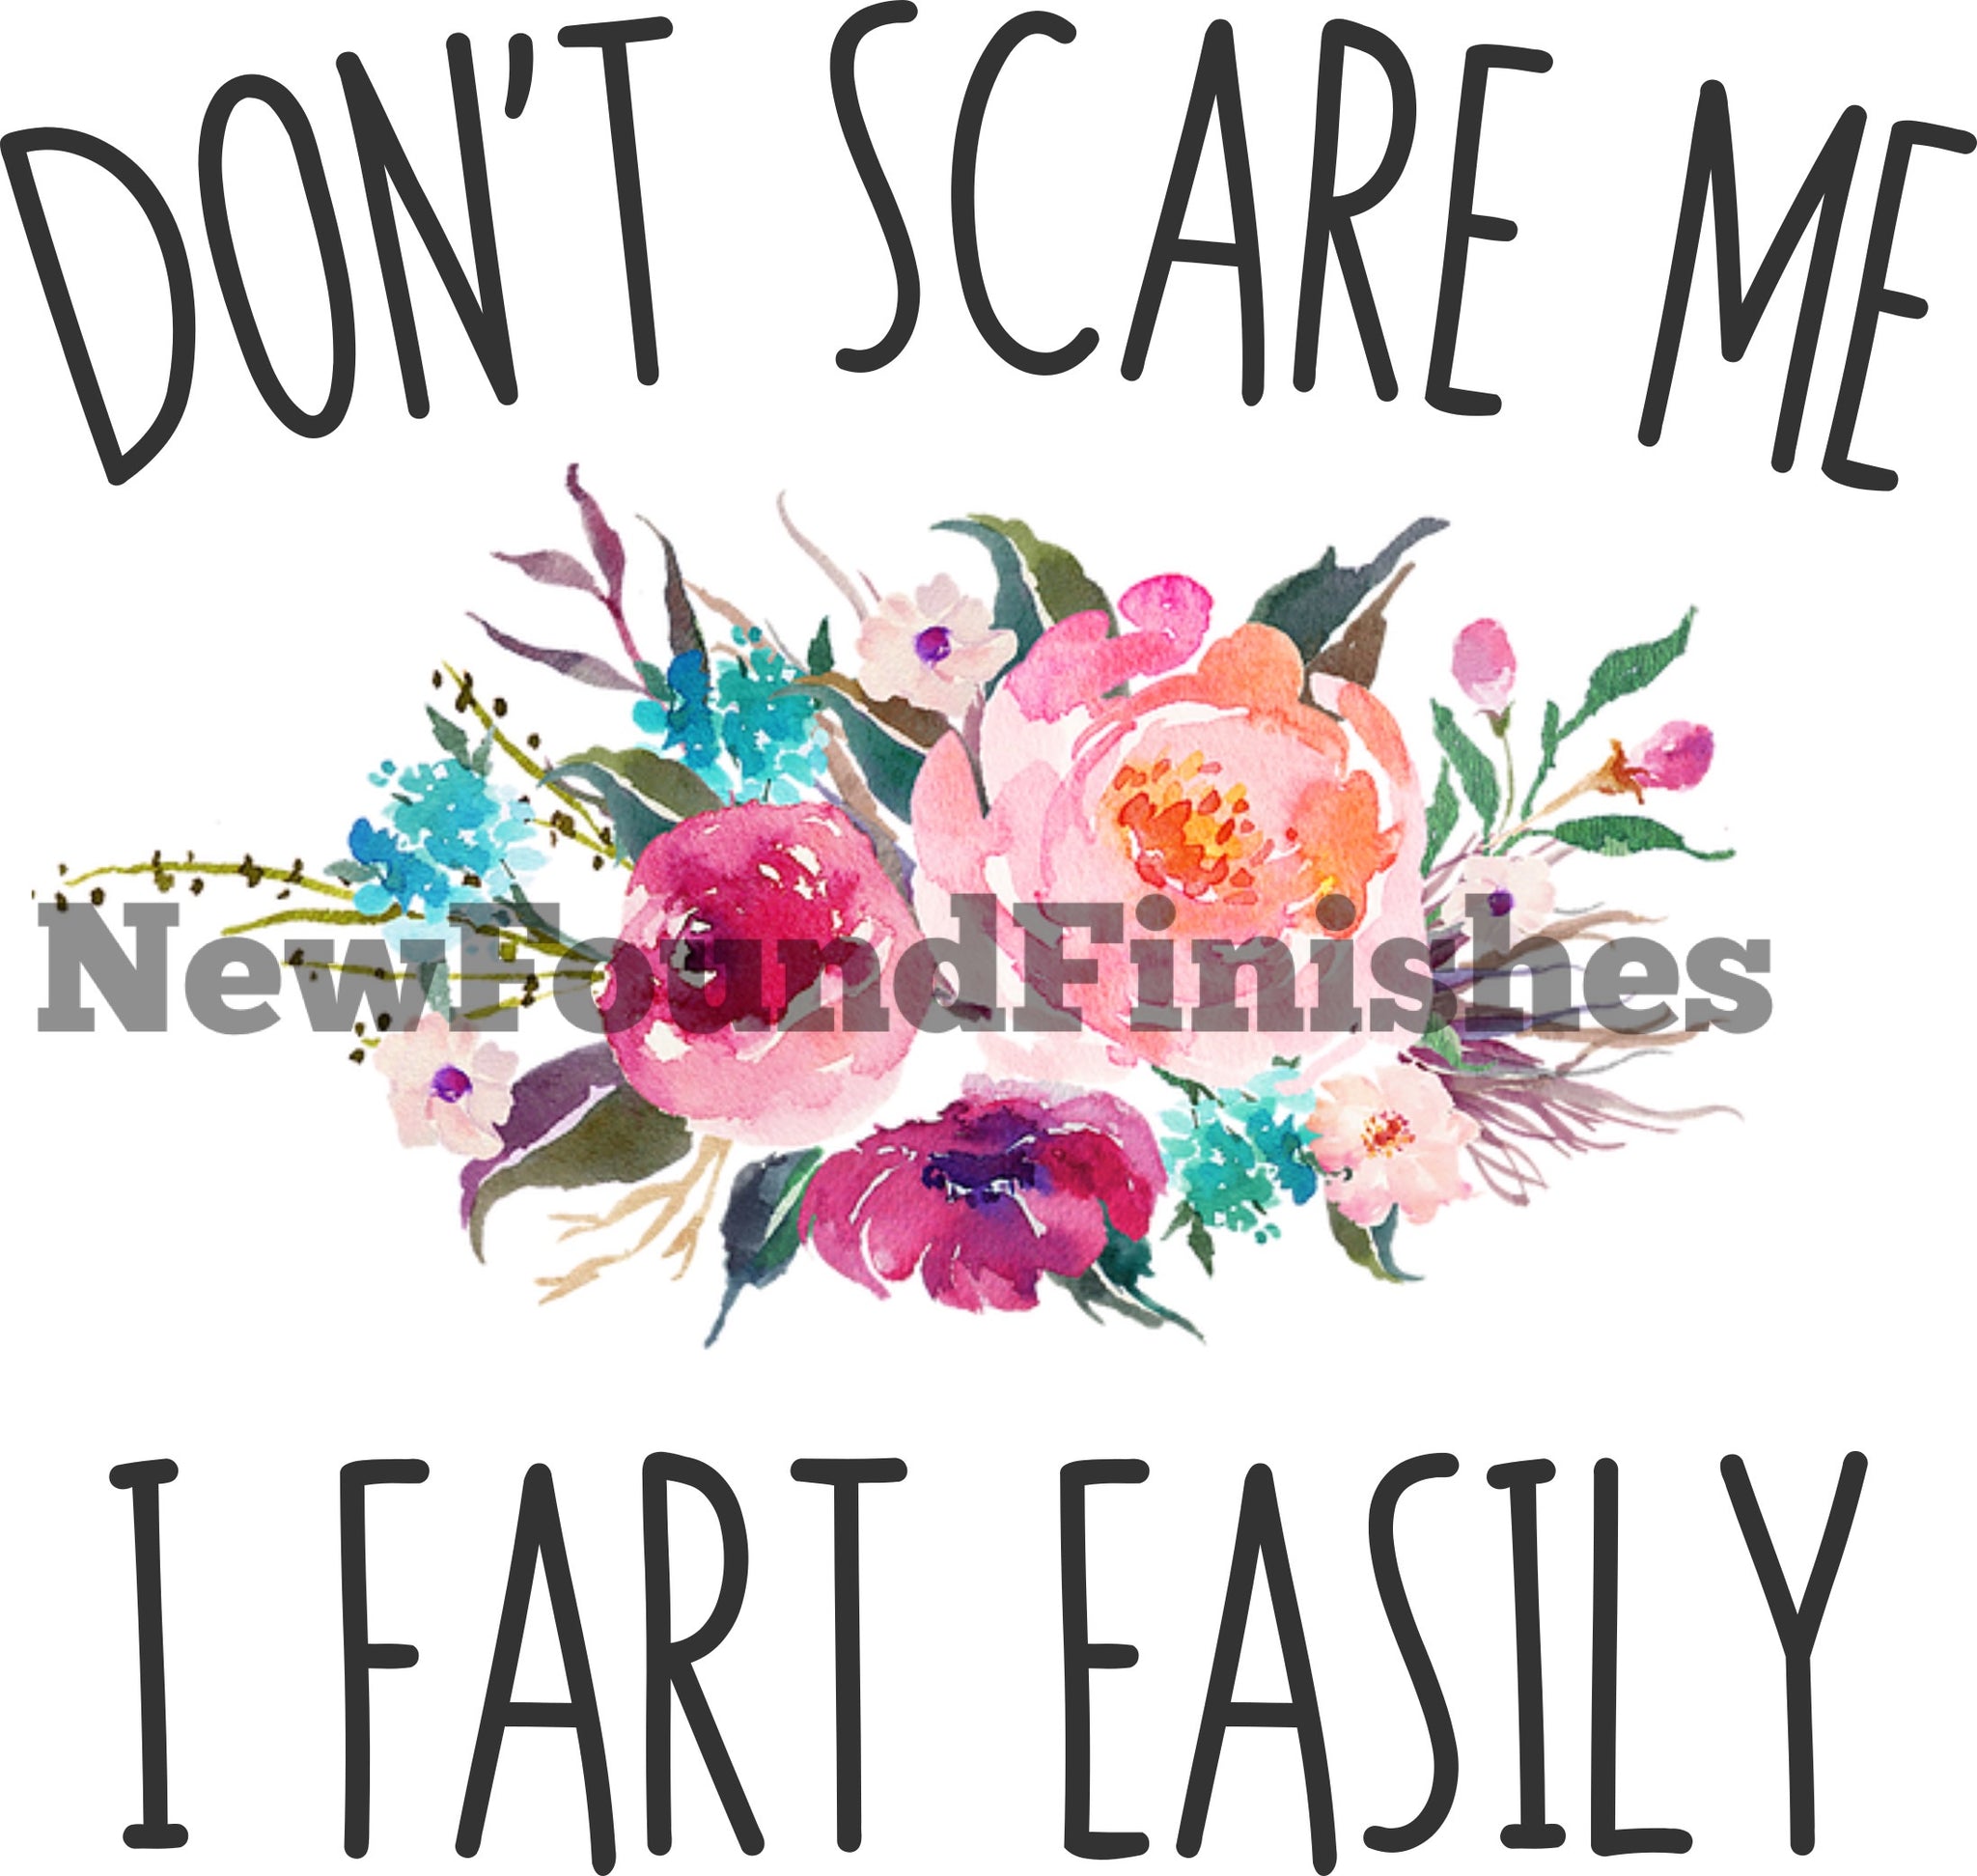 I fart easily